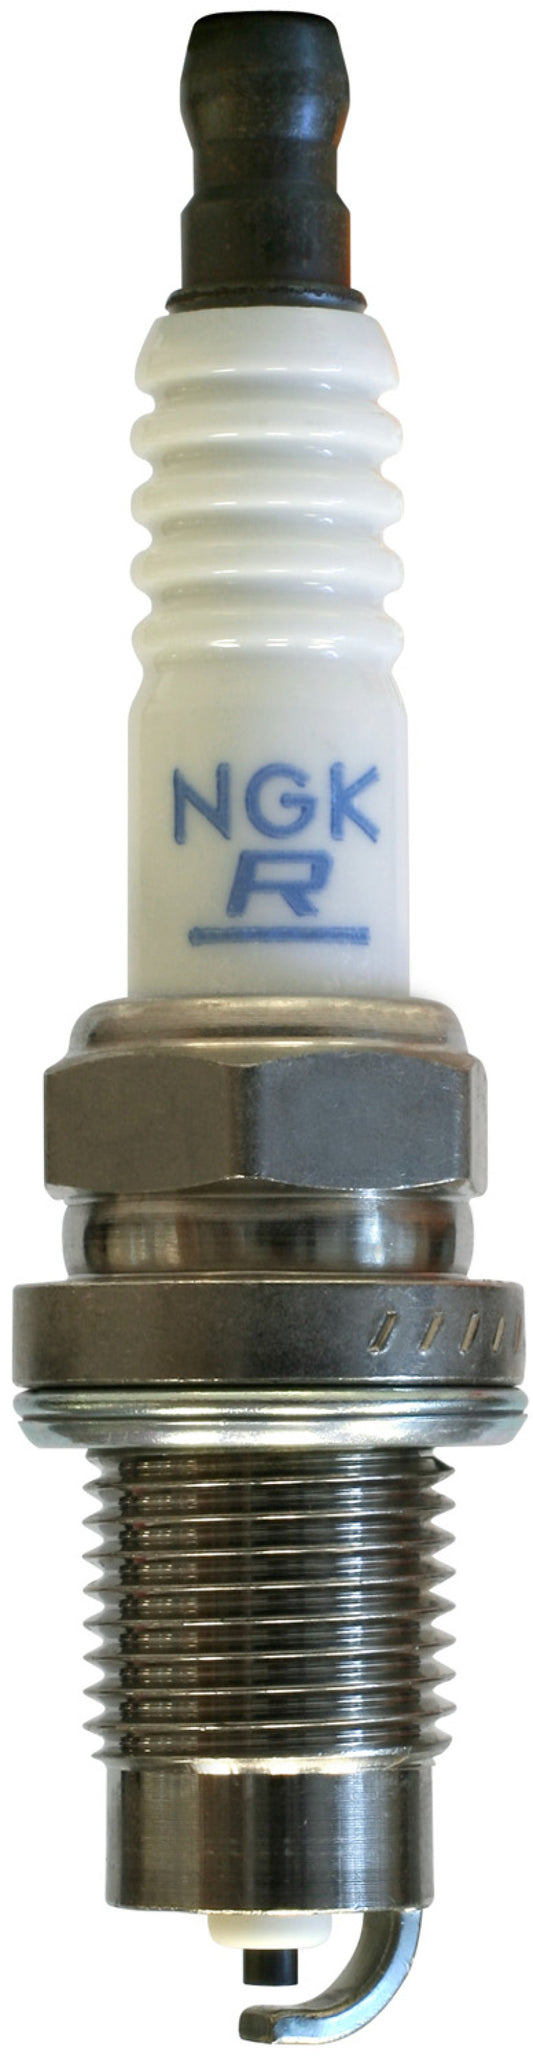 NGK Standard Spark Plug Box of 10 (FR2B-D)